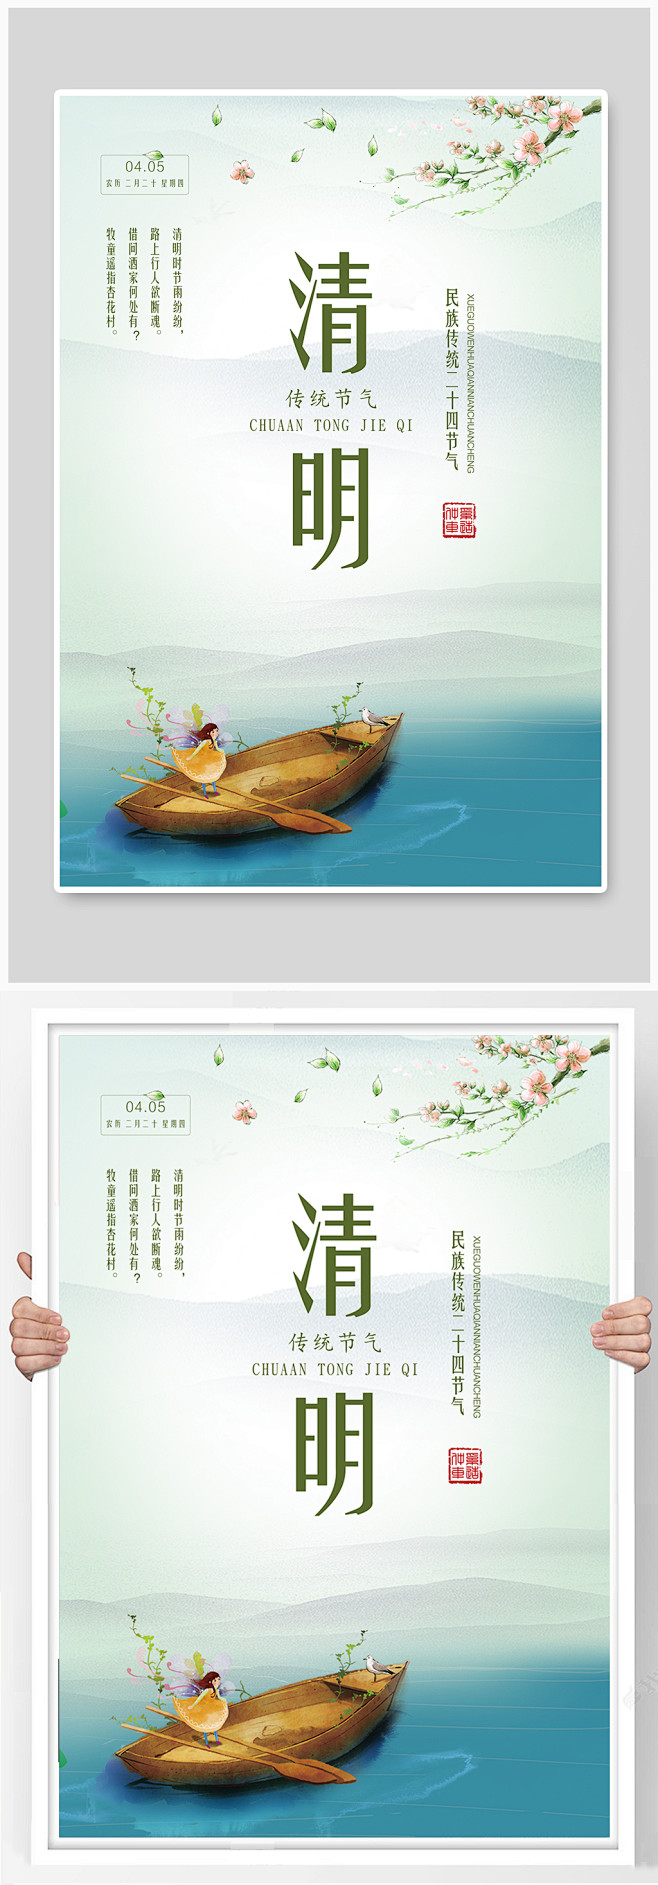 清明节传统节日宣传海报设计